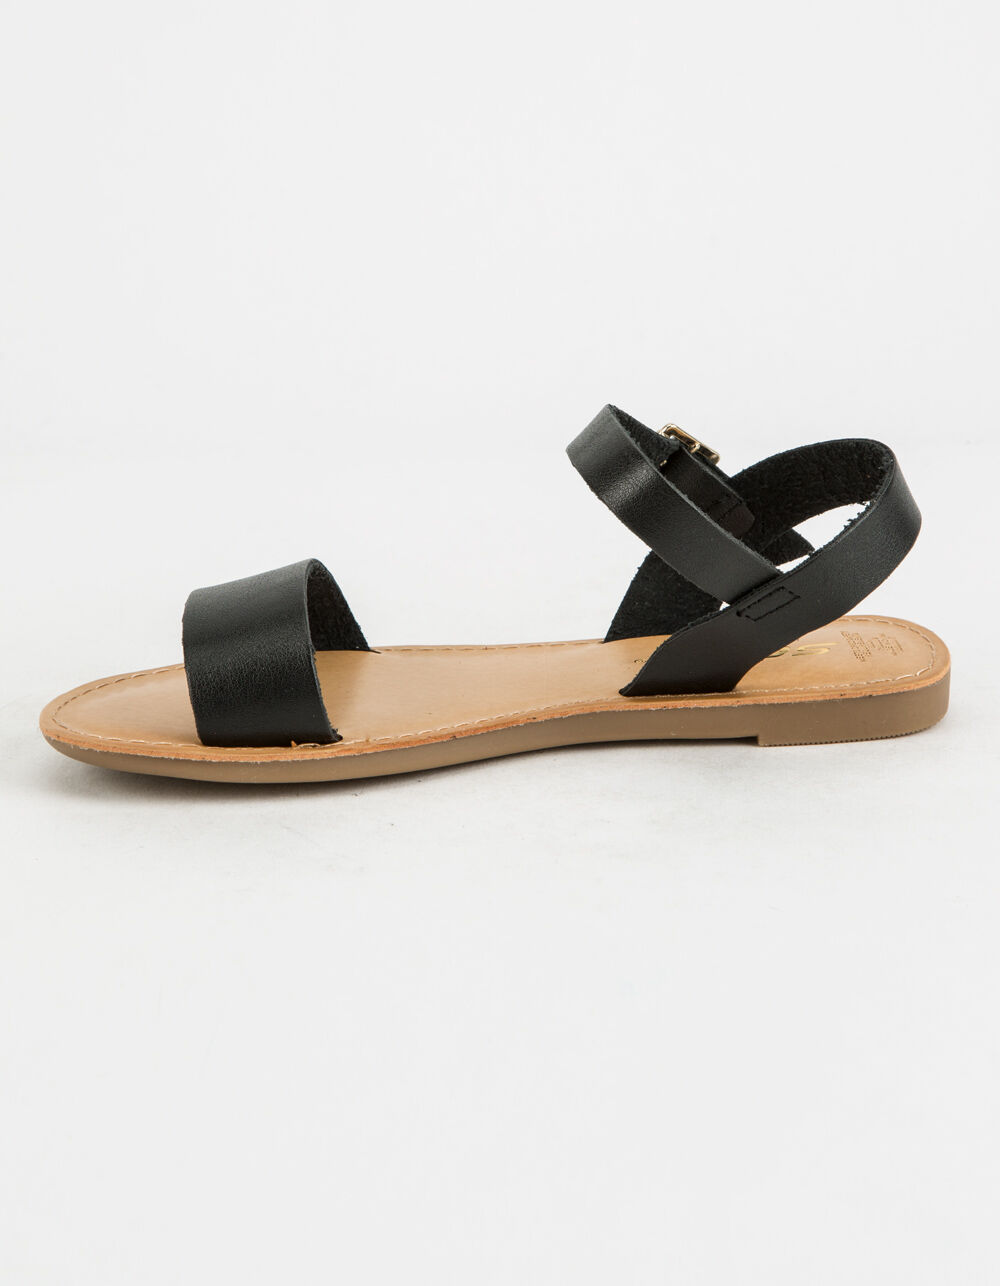 SODA Ankle Strap Girls Black Sandals - BLACK | Tillys